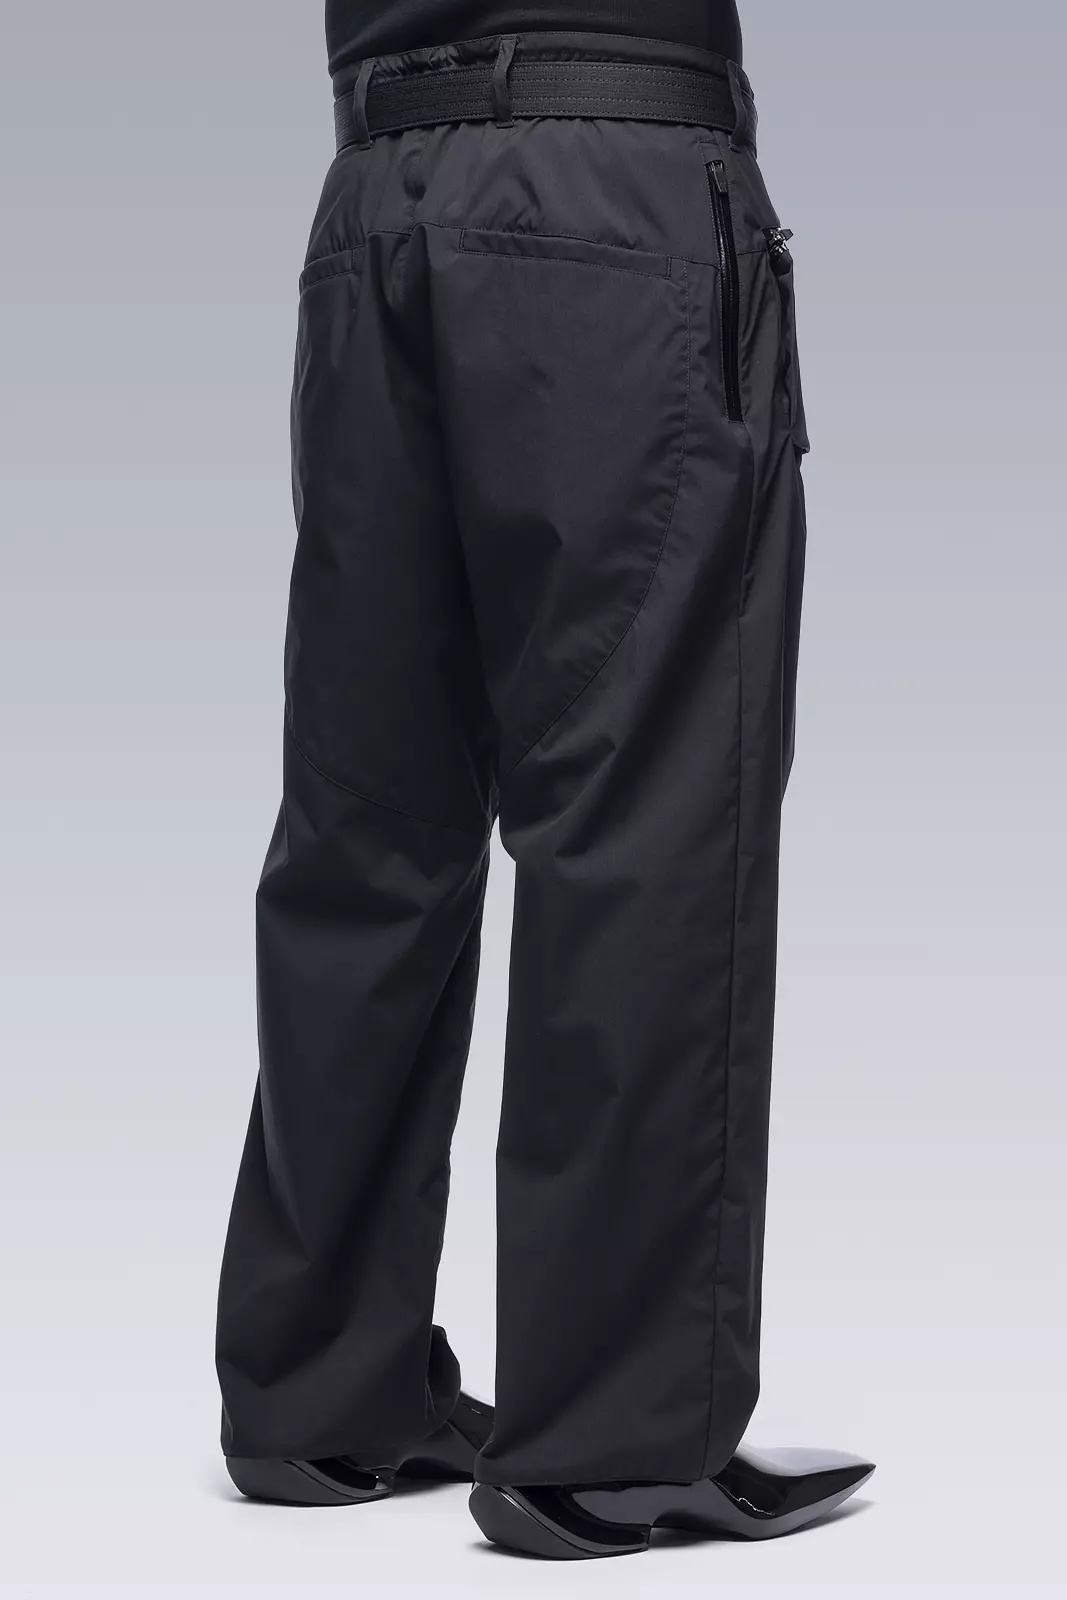 P50-E Encapsulated Nylon Pant Black - 5